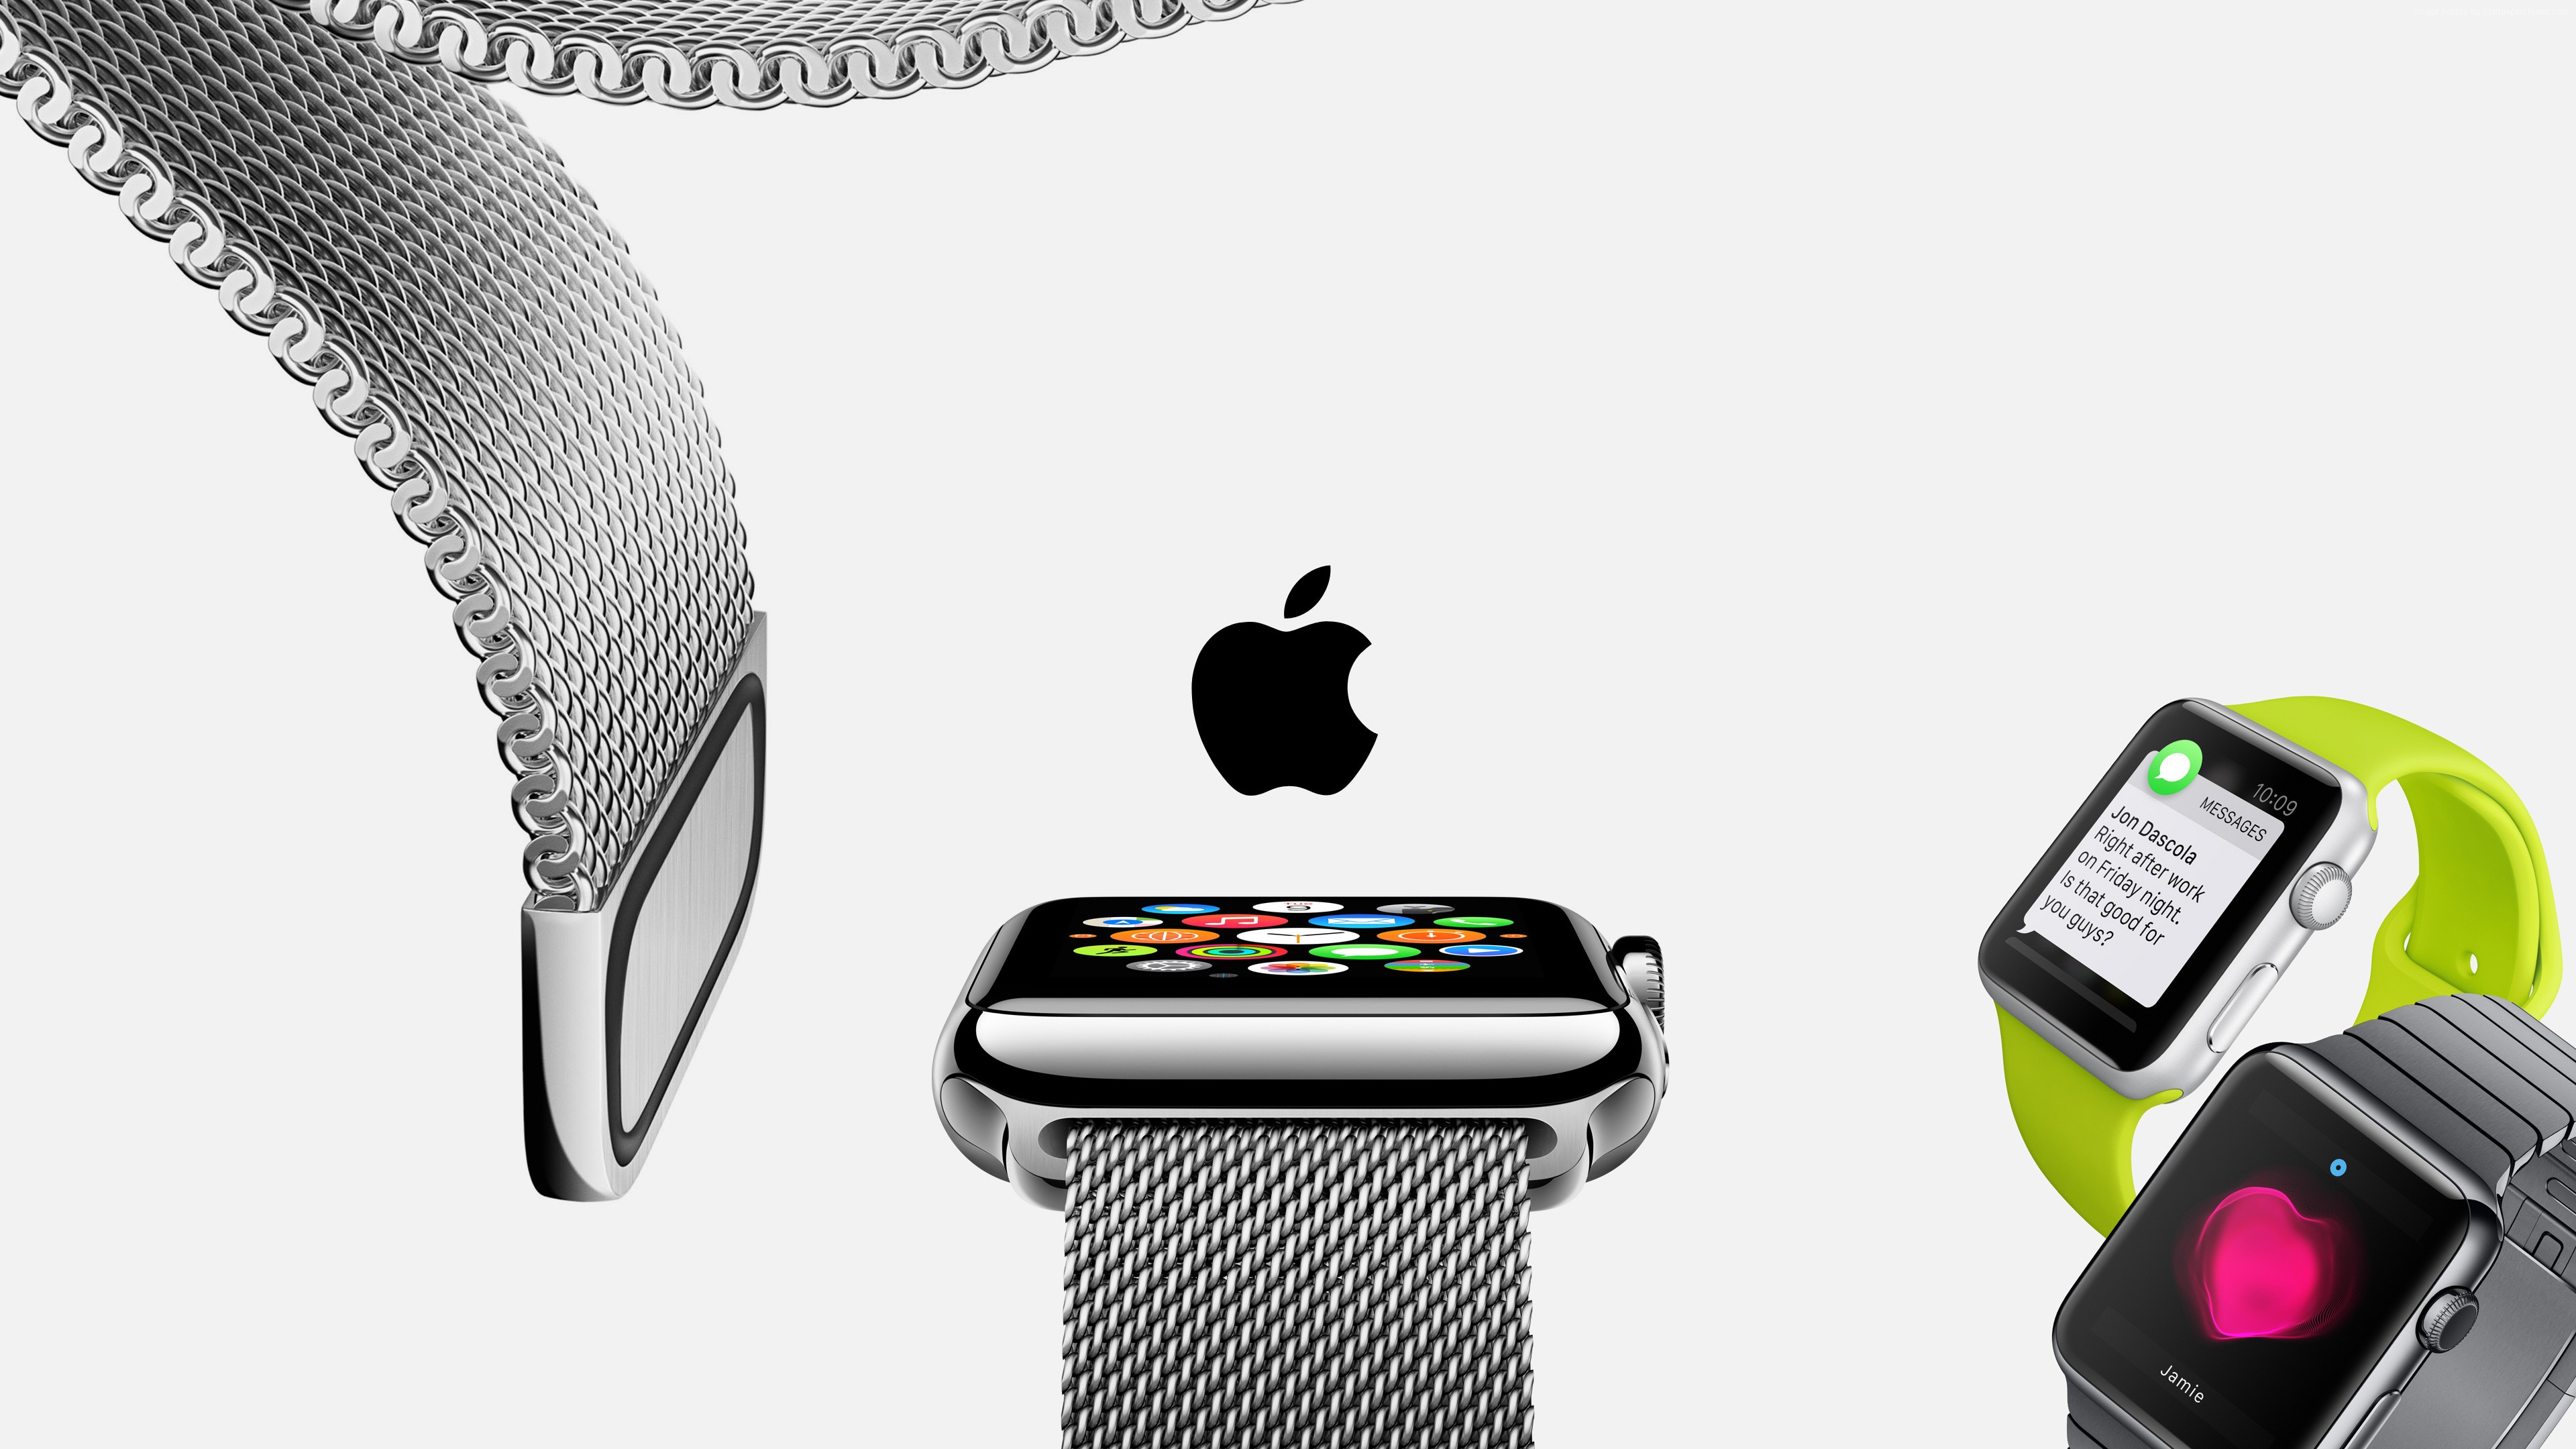 Apple Watch Wallpaper Hi Tech Watches